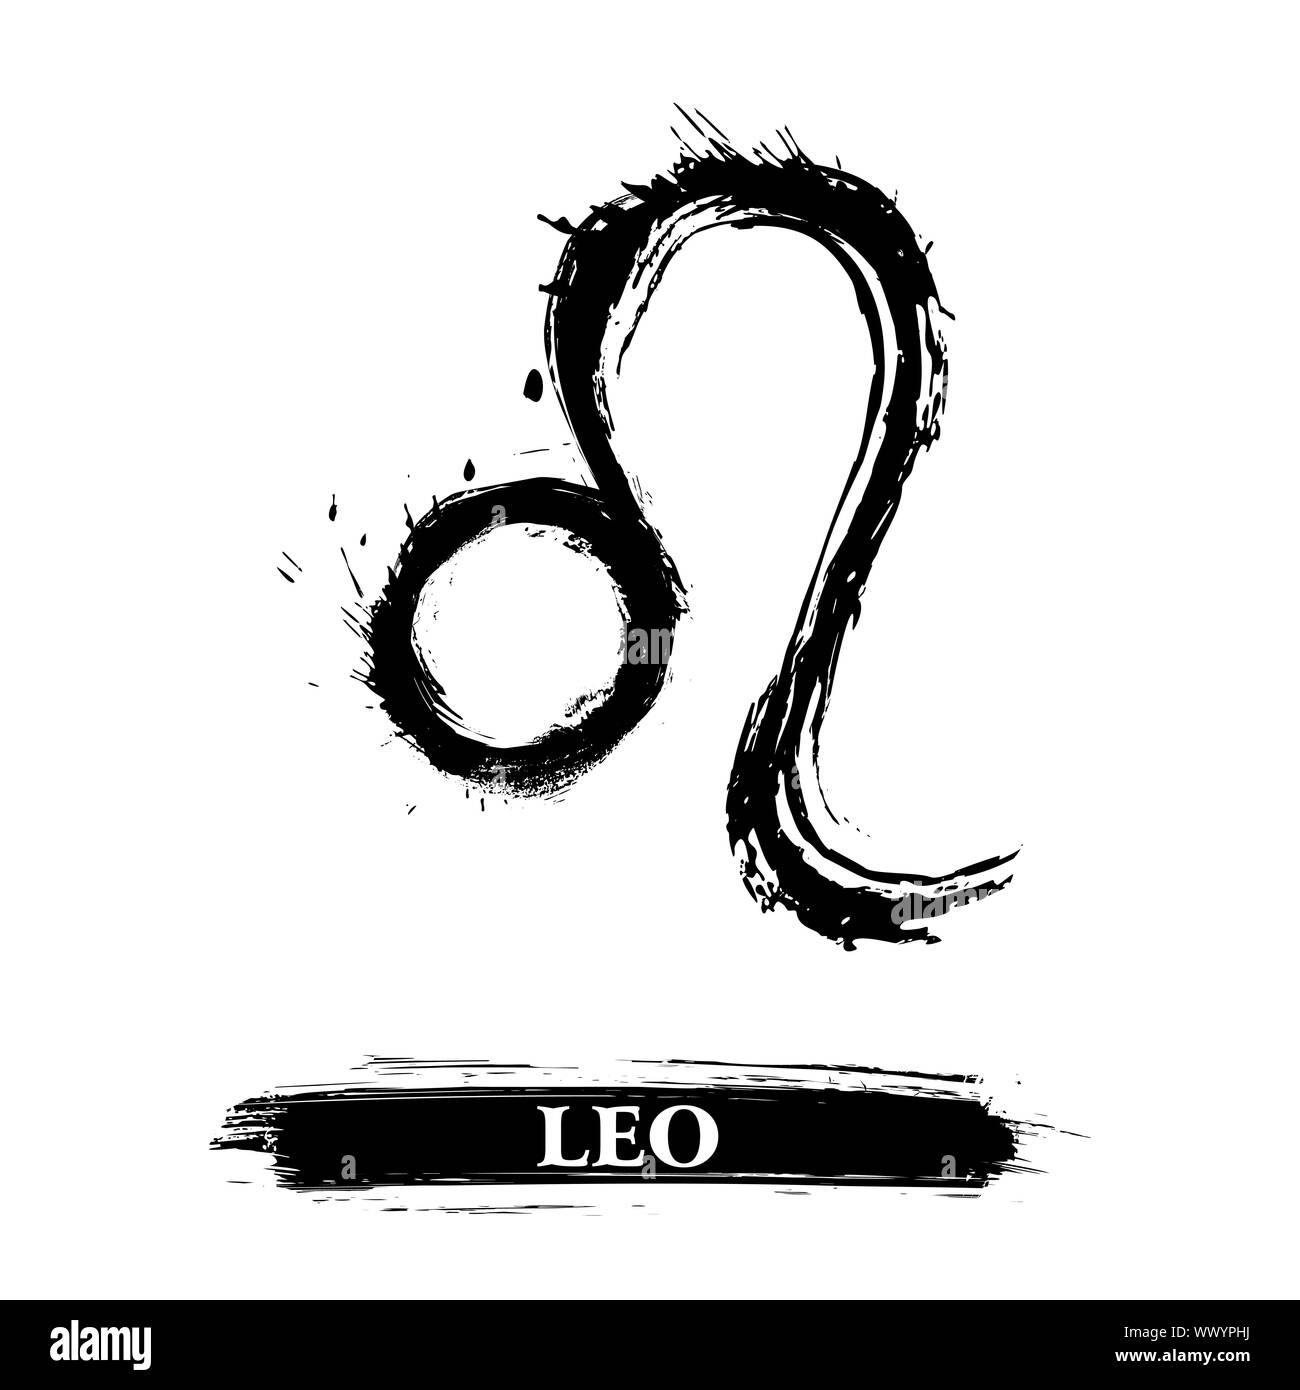 Leo symbol Stock Photo